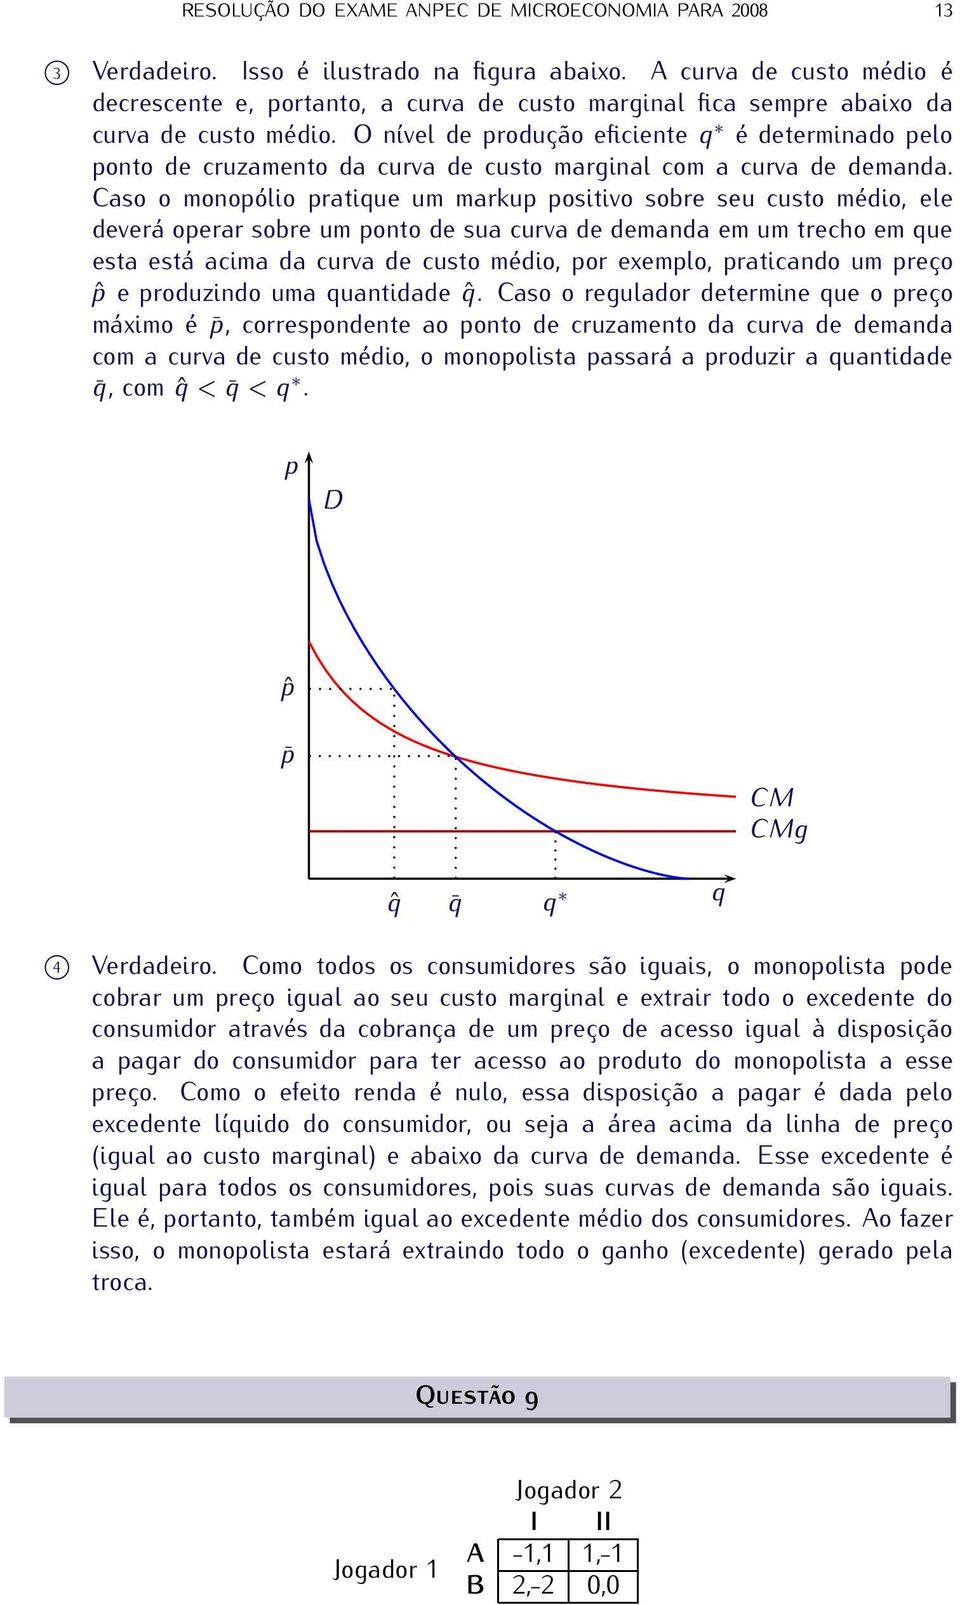 O nível de produção eficiente q é determinado pelo ponto de cruzamento da curva de custo marginal com a curva de demanda.